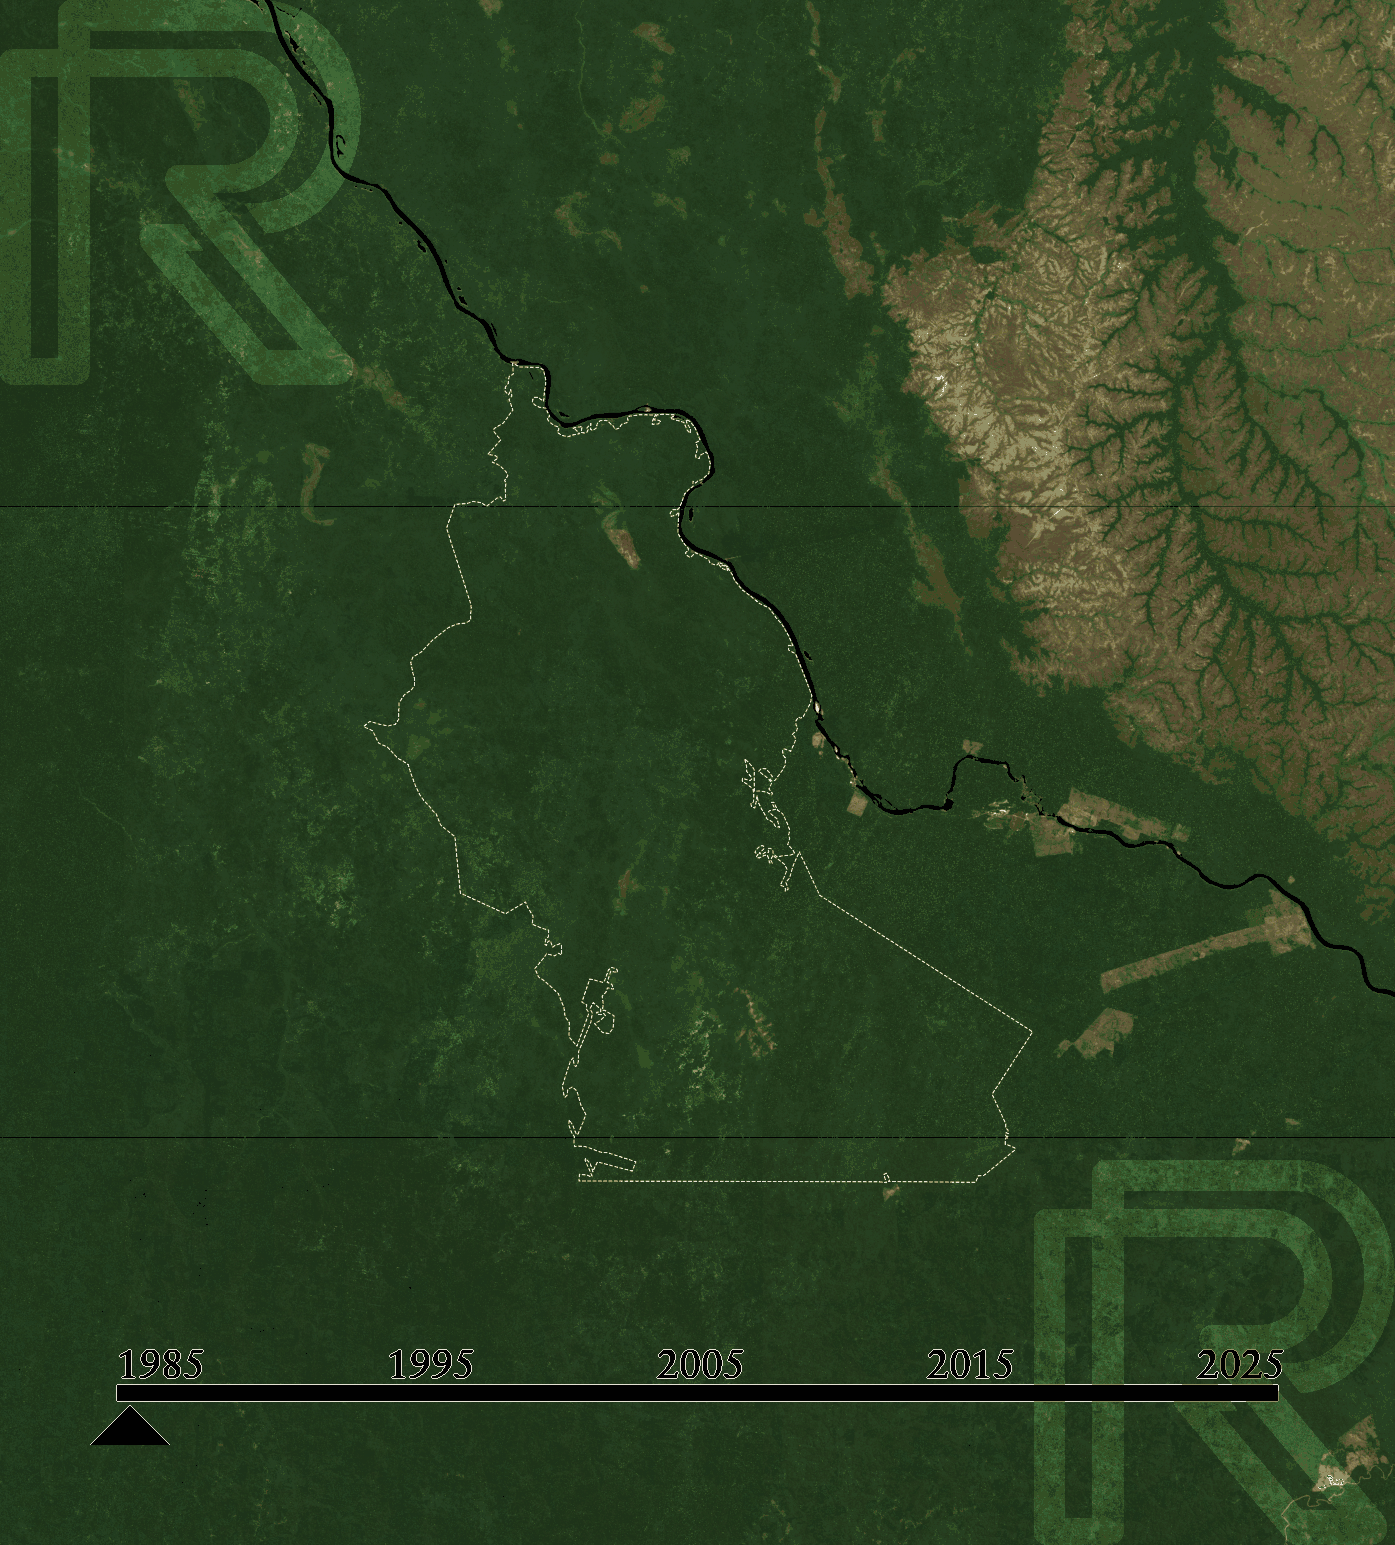 Satellite image of Rio Preto-Jacundá REDD+ over time